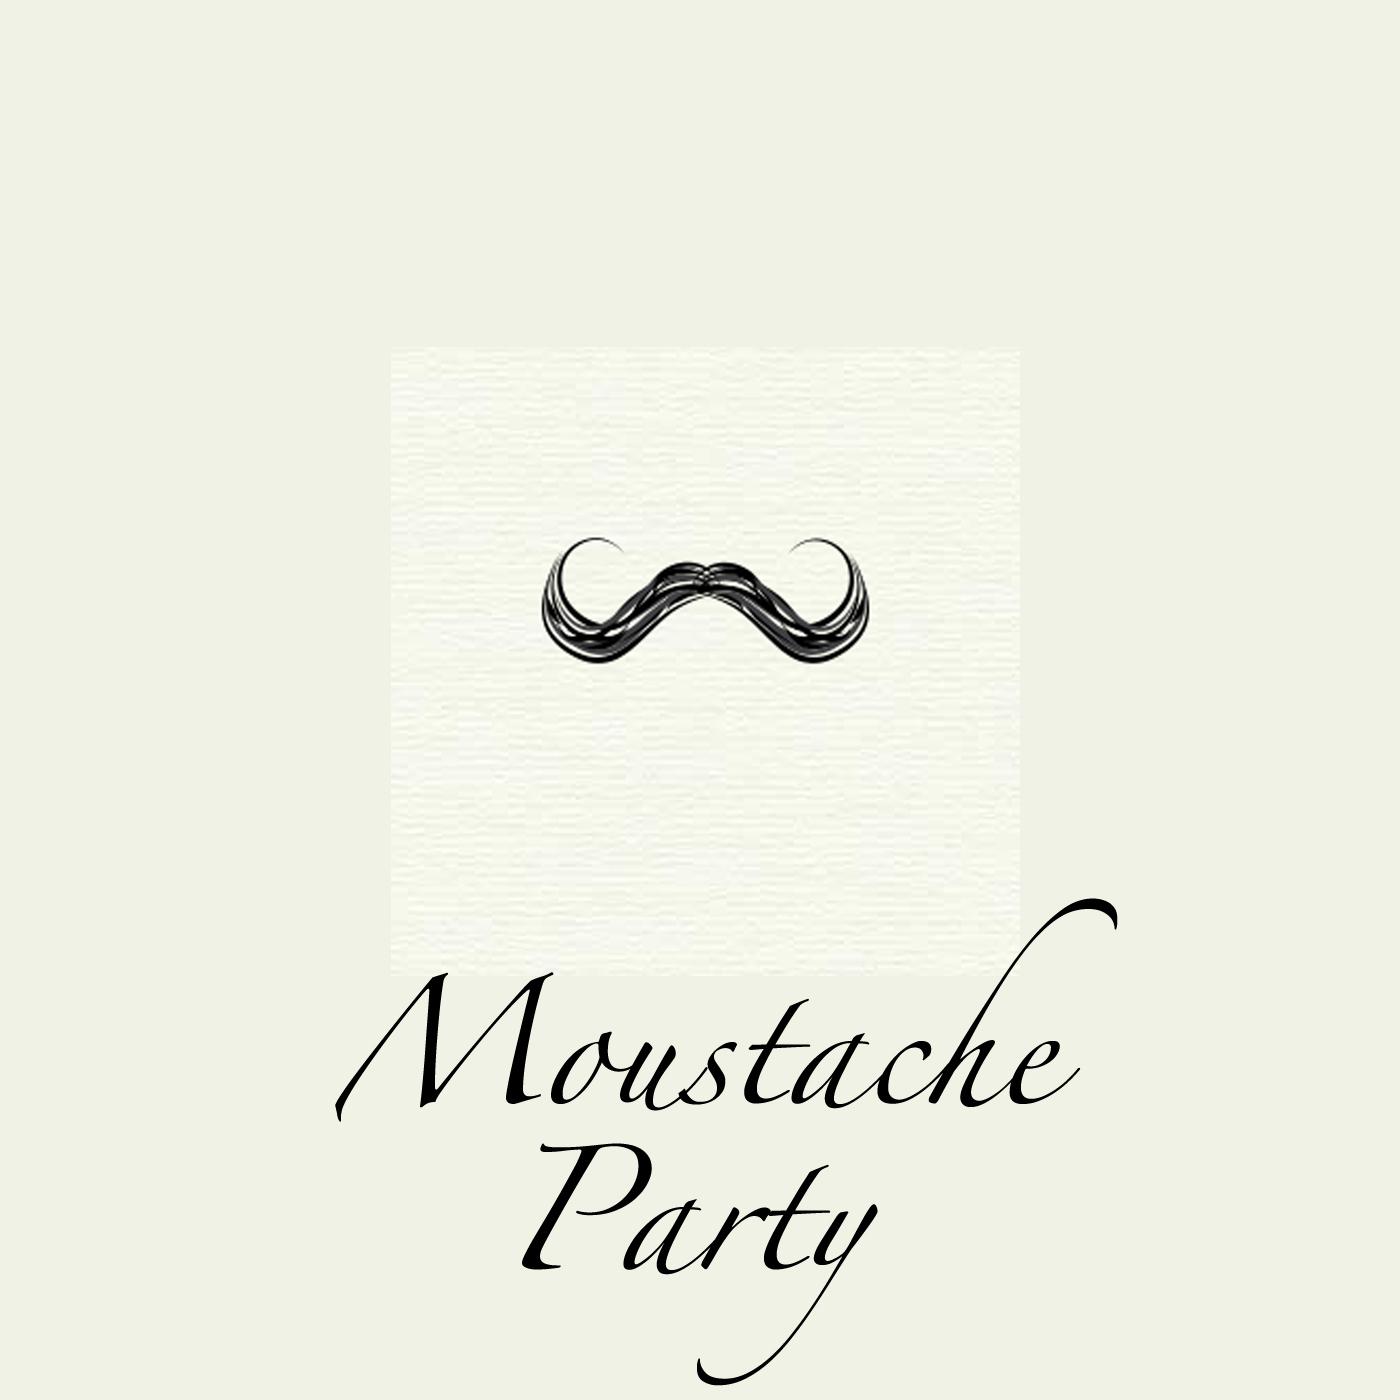 Moustache Party, Vol.1